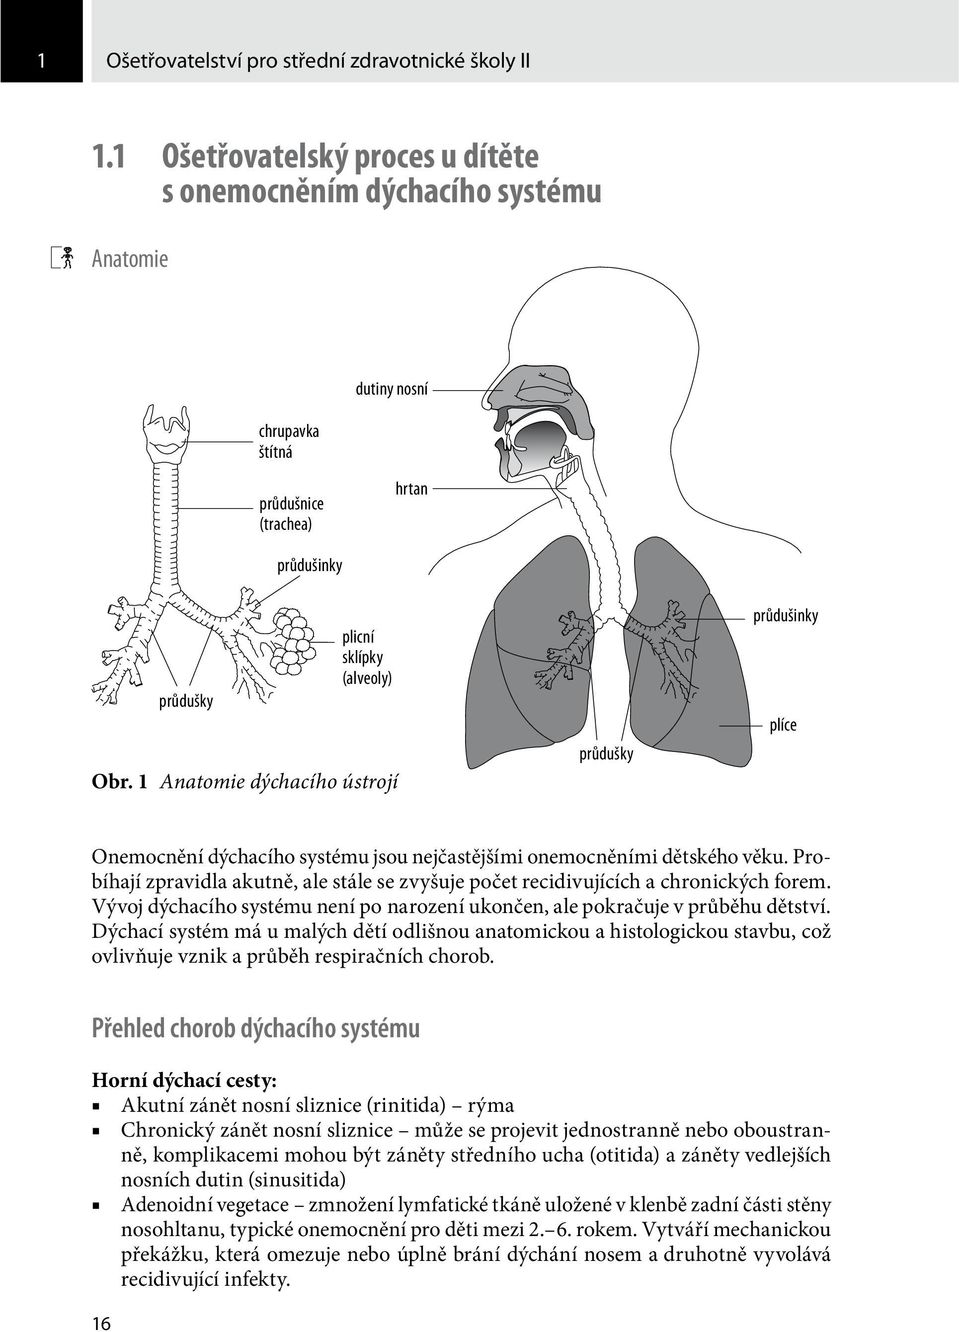 1 Anatomie dýchacího ústrojí průdušky průdušinky plíce Onemocnění dýchacího systému jsou nejčastějšími onemocněními dětského věku.